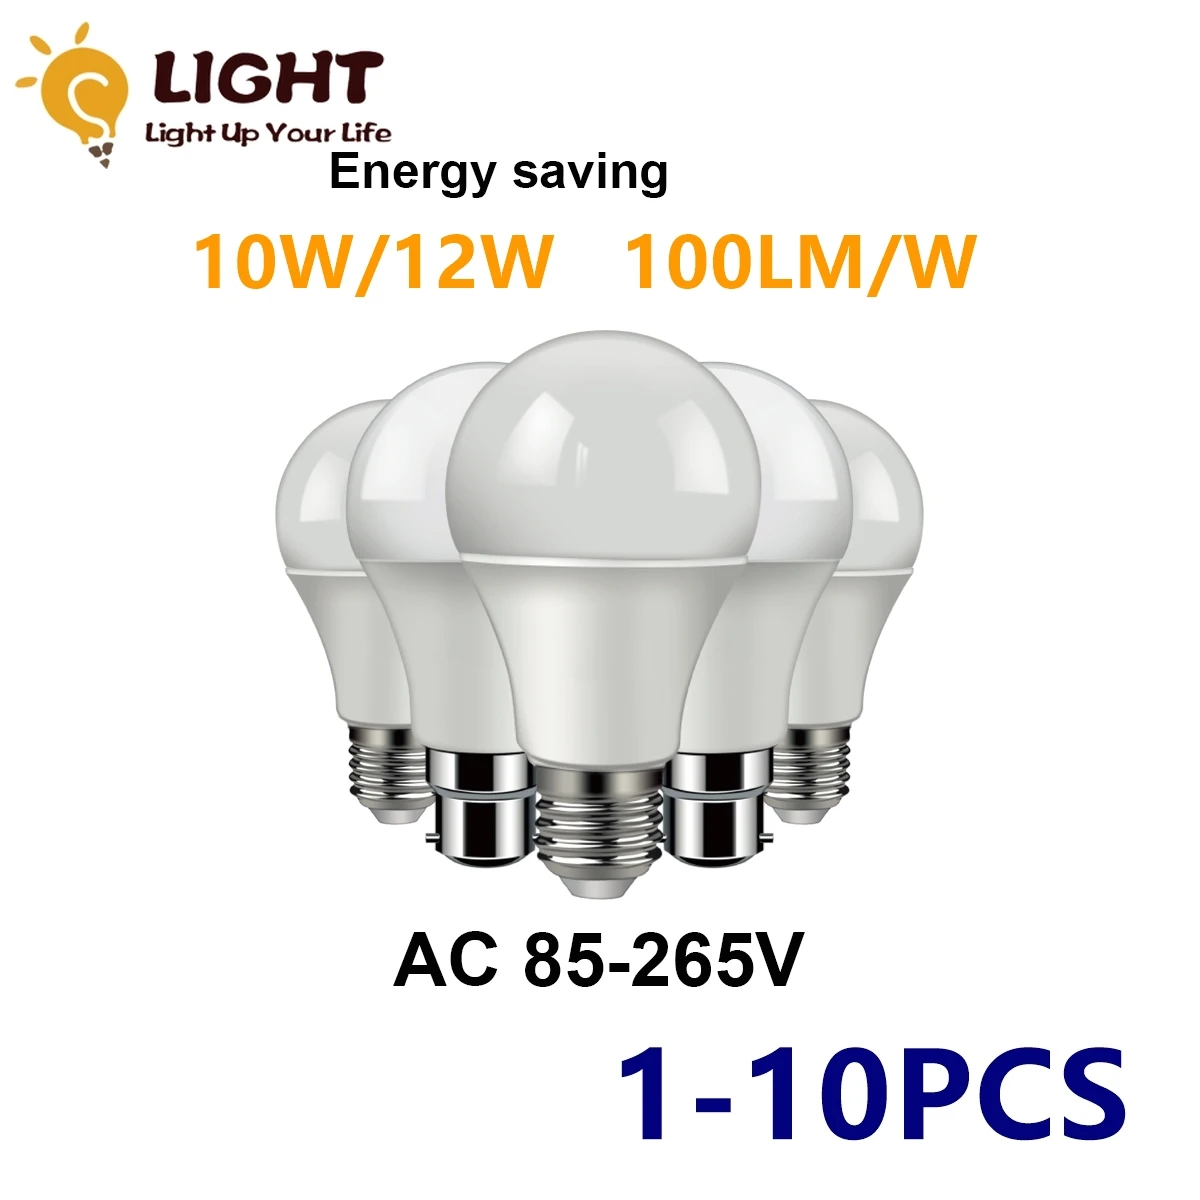 

A60 lampara led 220v 110v bulb lights E27 B22 10W 12W 1000lm High Lumen lighting for living room led bulbs for house for home